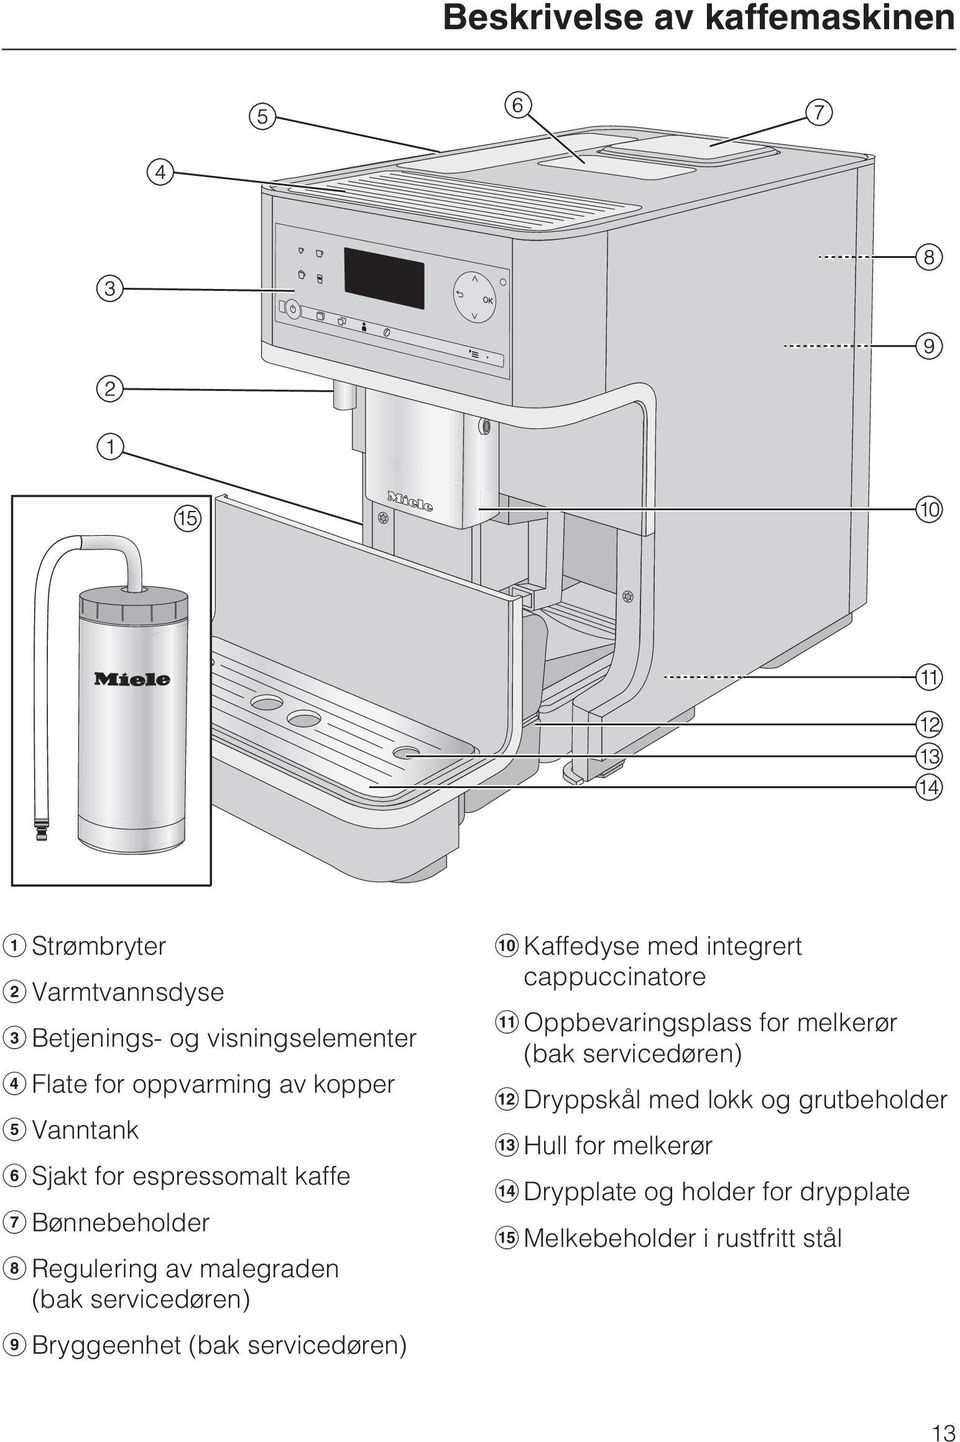 Bryggeenhet (bak servicedøren) j Kaffedyse med integrert cappuccinatore k Oppbevaringsplass for melkerør (bak